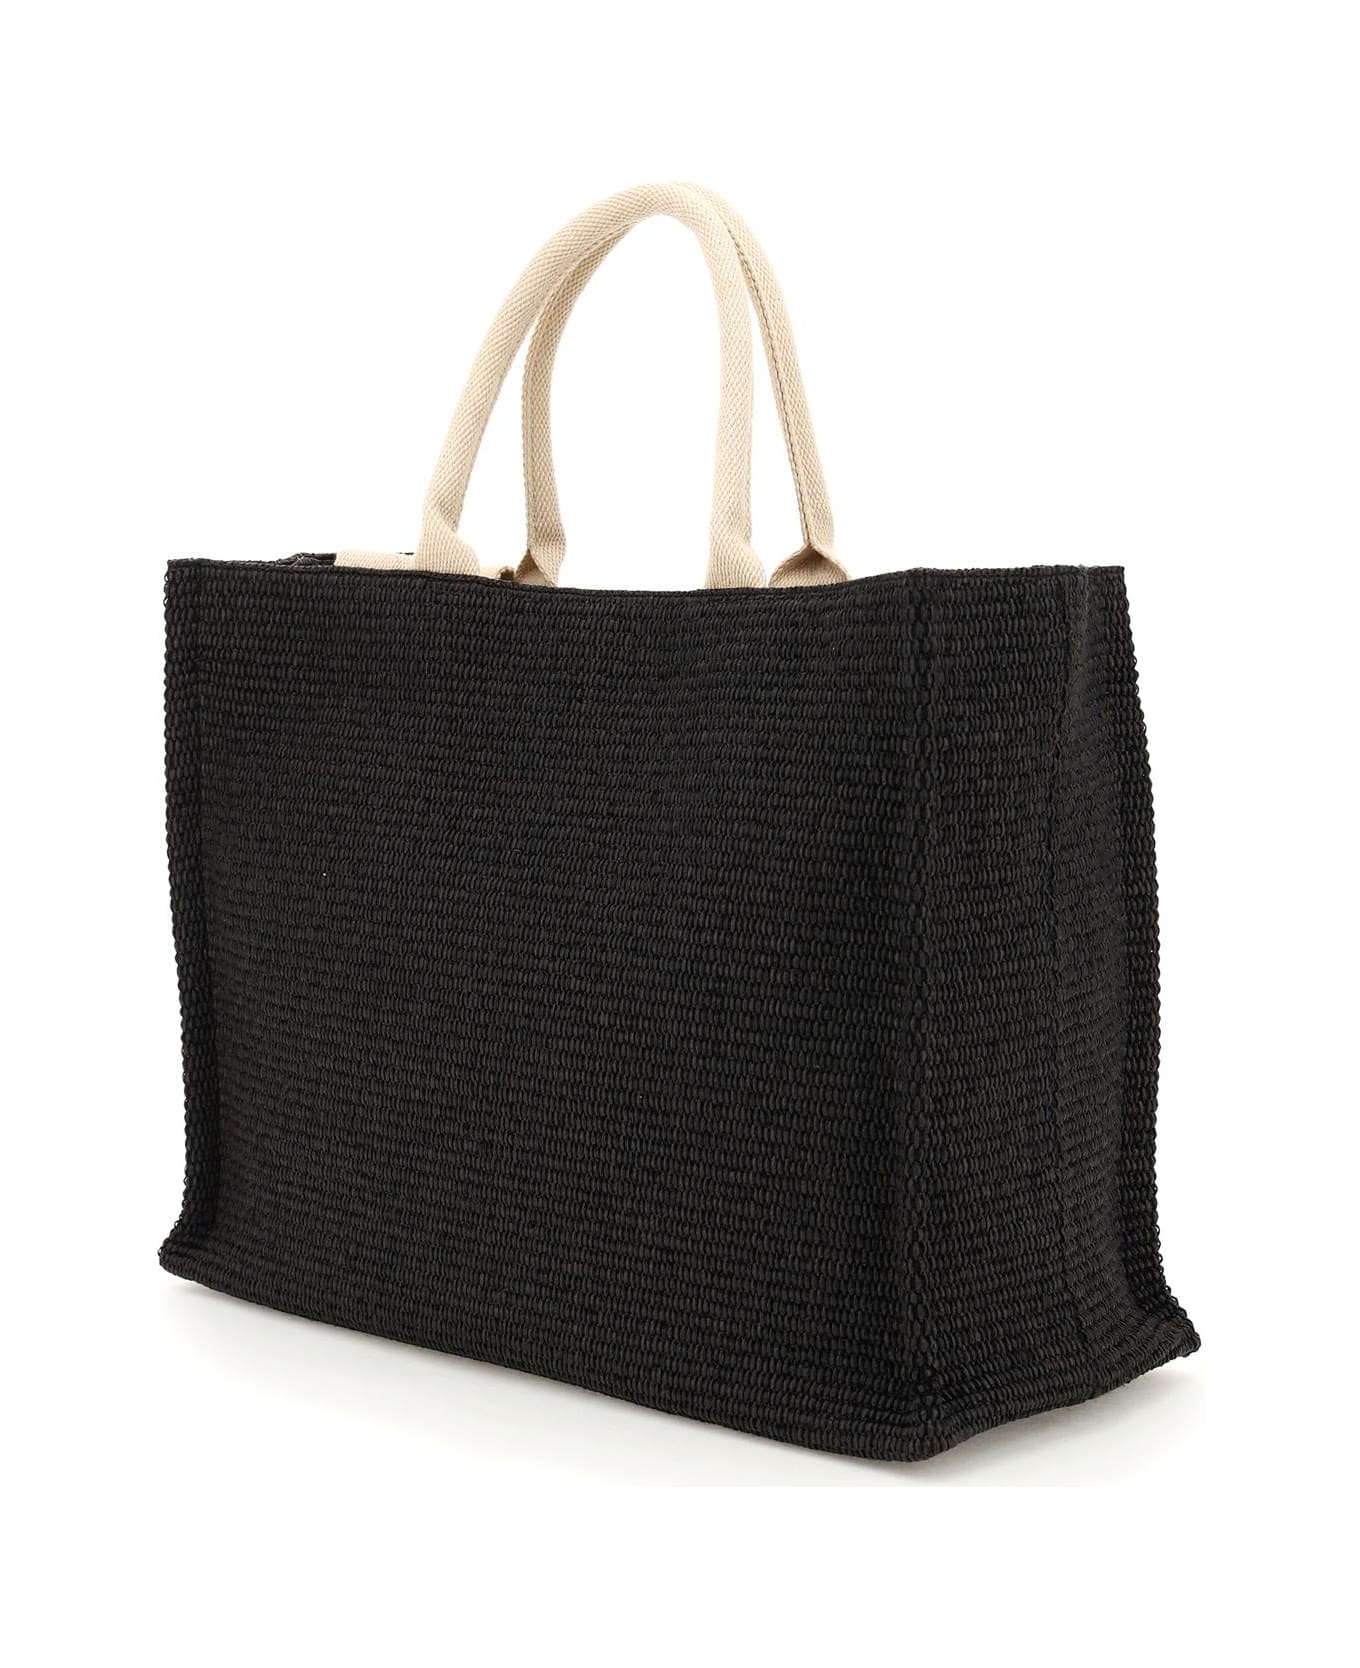 Marni 'tote' Shopping Bag - BLACK NATURAL (Black) トートバッグ